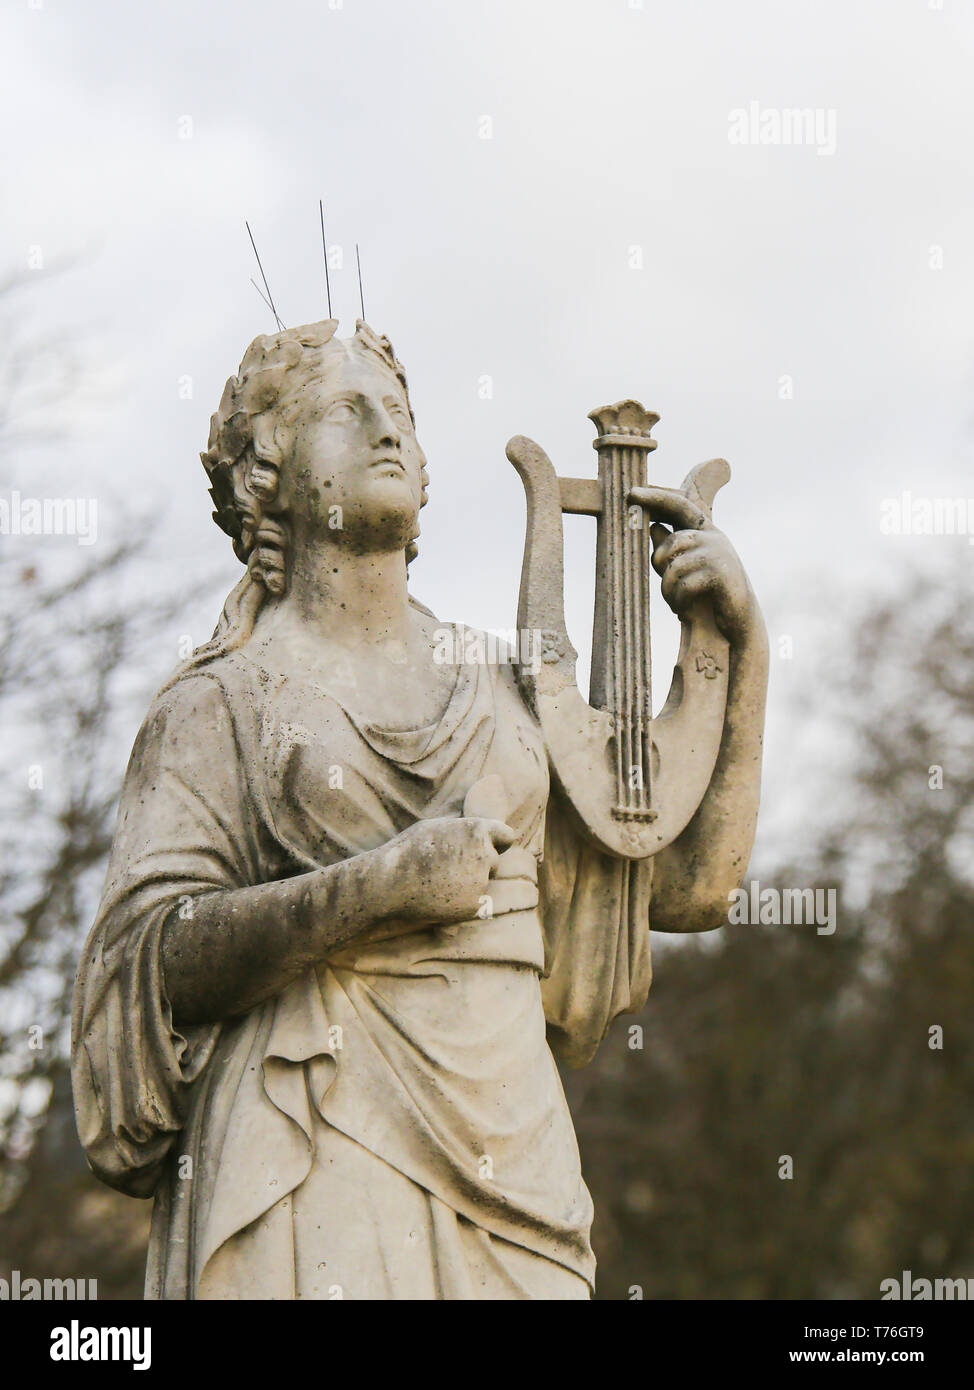 Statue de Calliope, dans la mythologie grecque la muse qui préside à l'éloquence et la poésie épique, tenant une lyre dans le Jardin du Luxembourg, Paris, France Banque D'Images